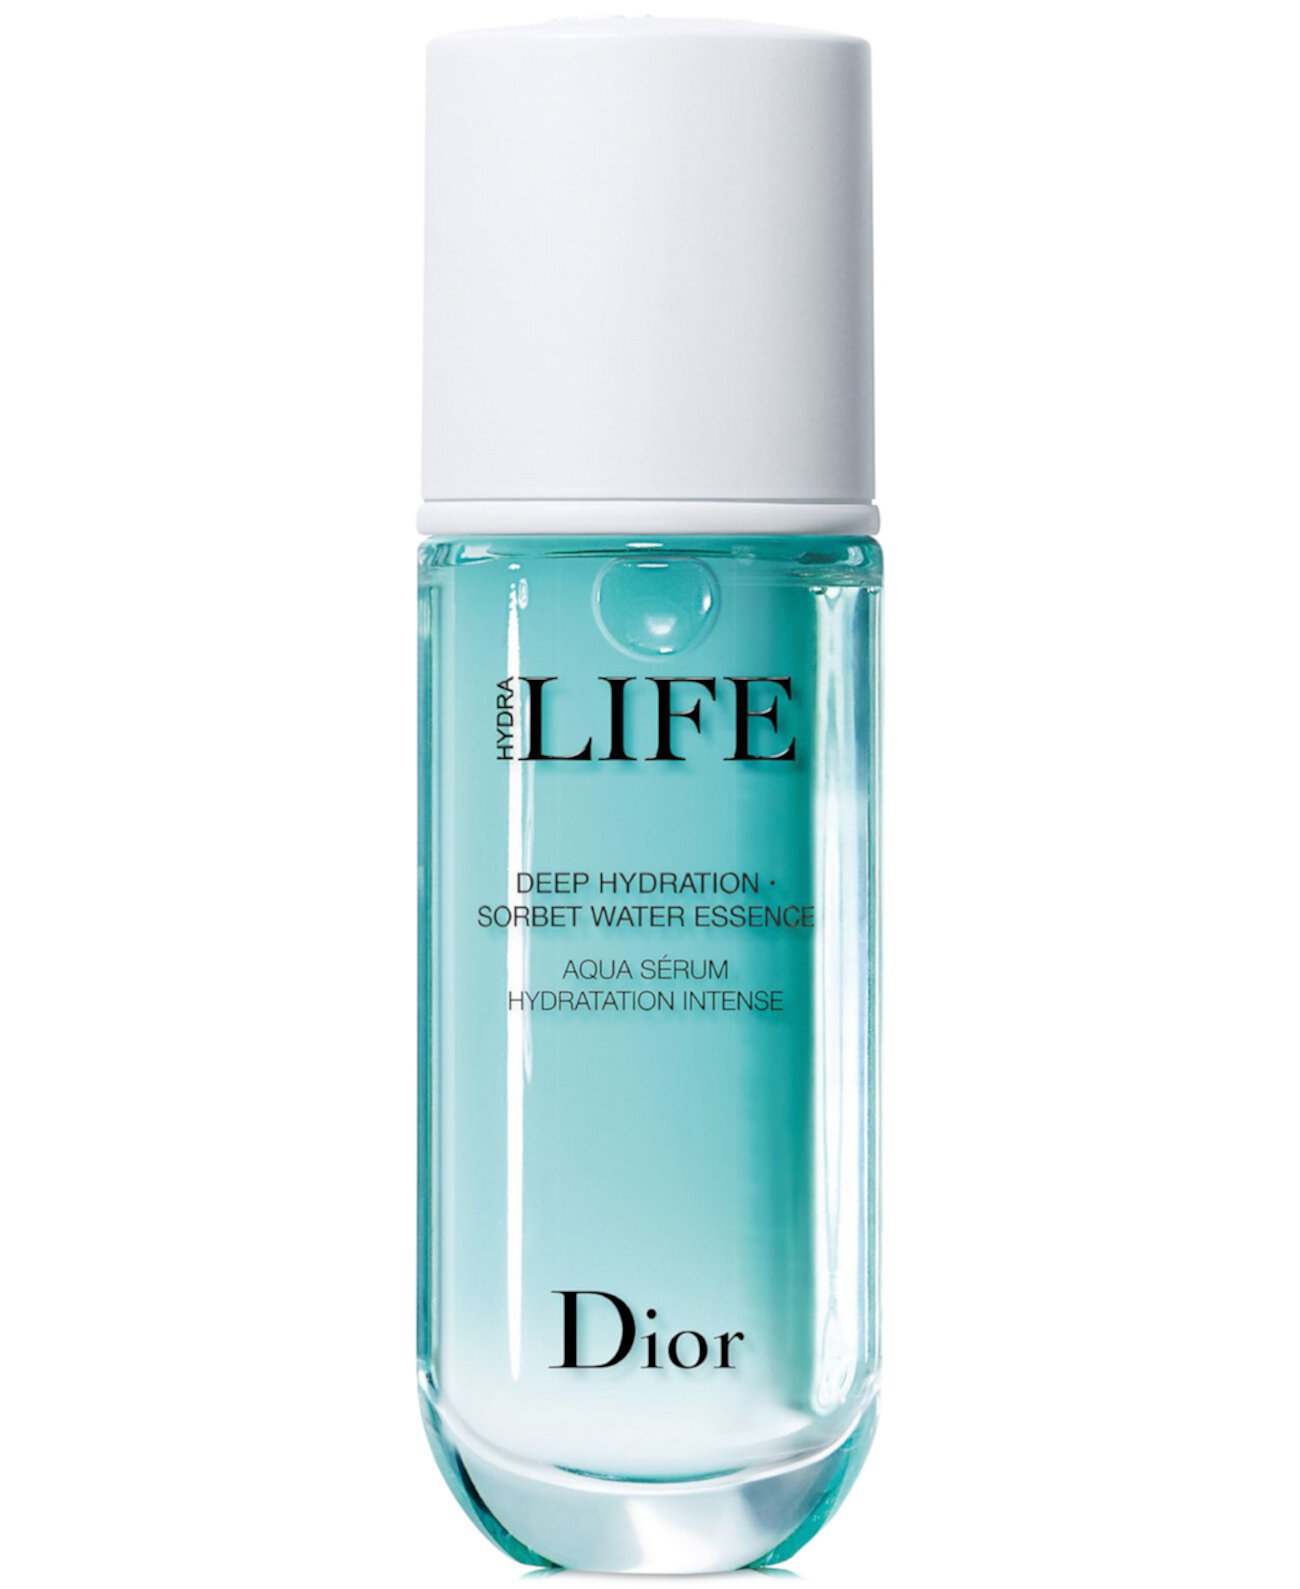 Hydra Life Глубокое увлажнение Sorbet Water Essence, 1,35 унции. Dior